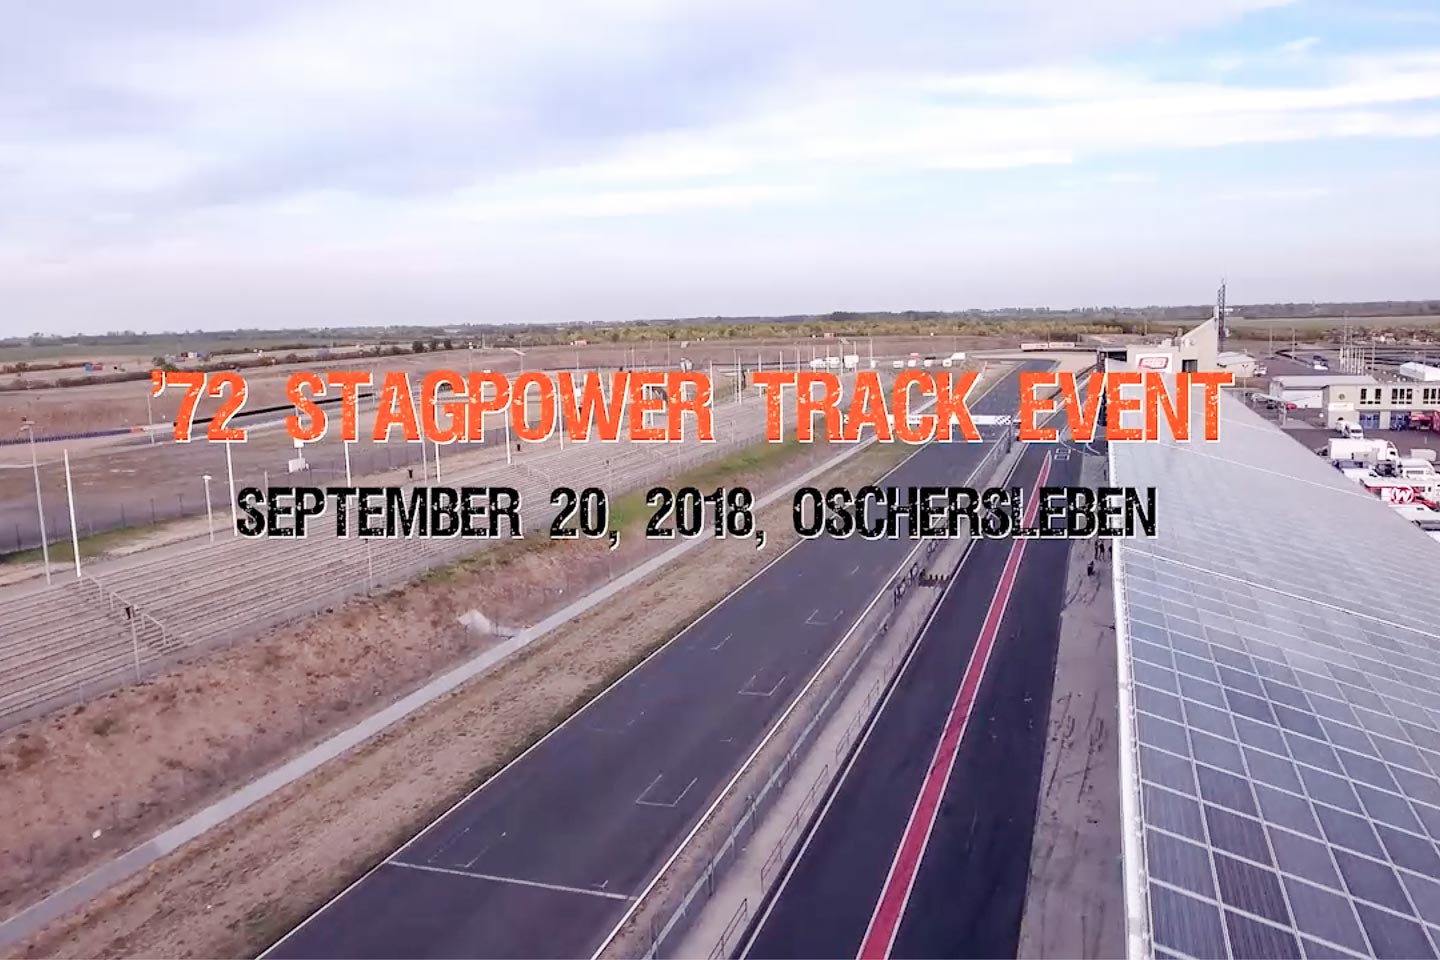 ´72stagpower Track Event Oschersleben 2018